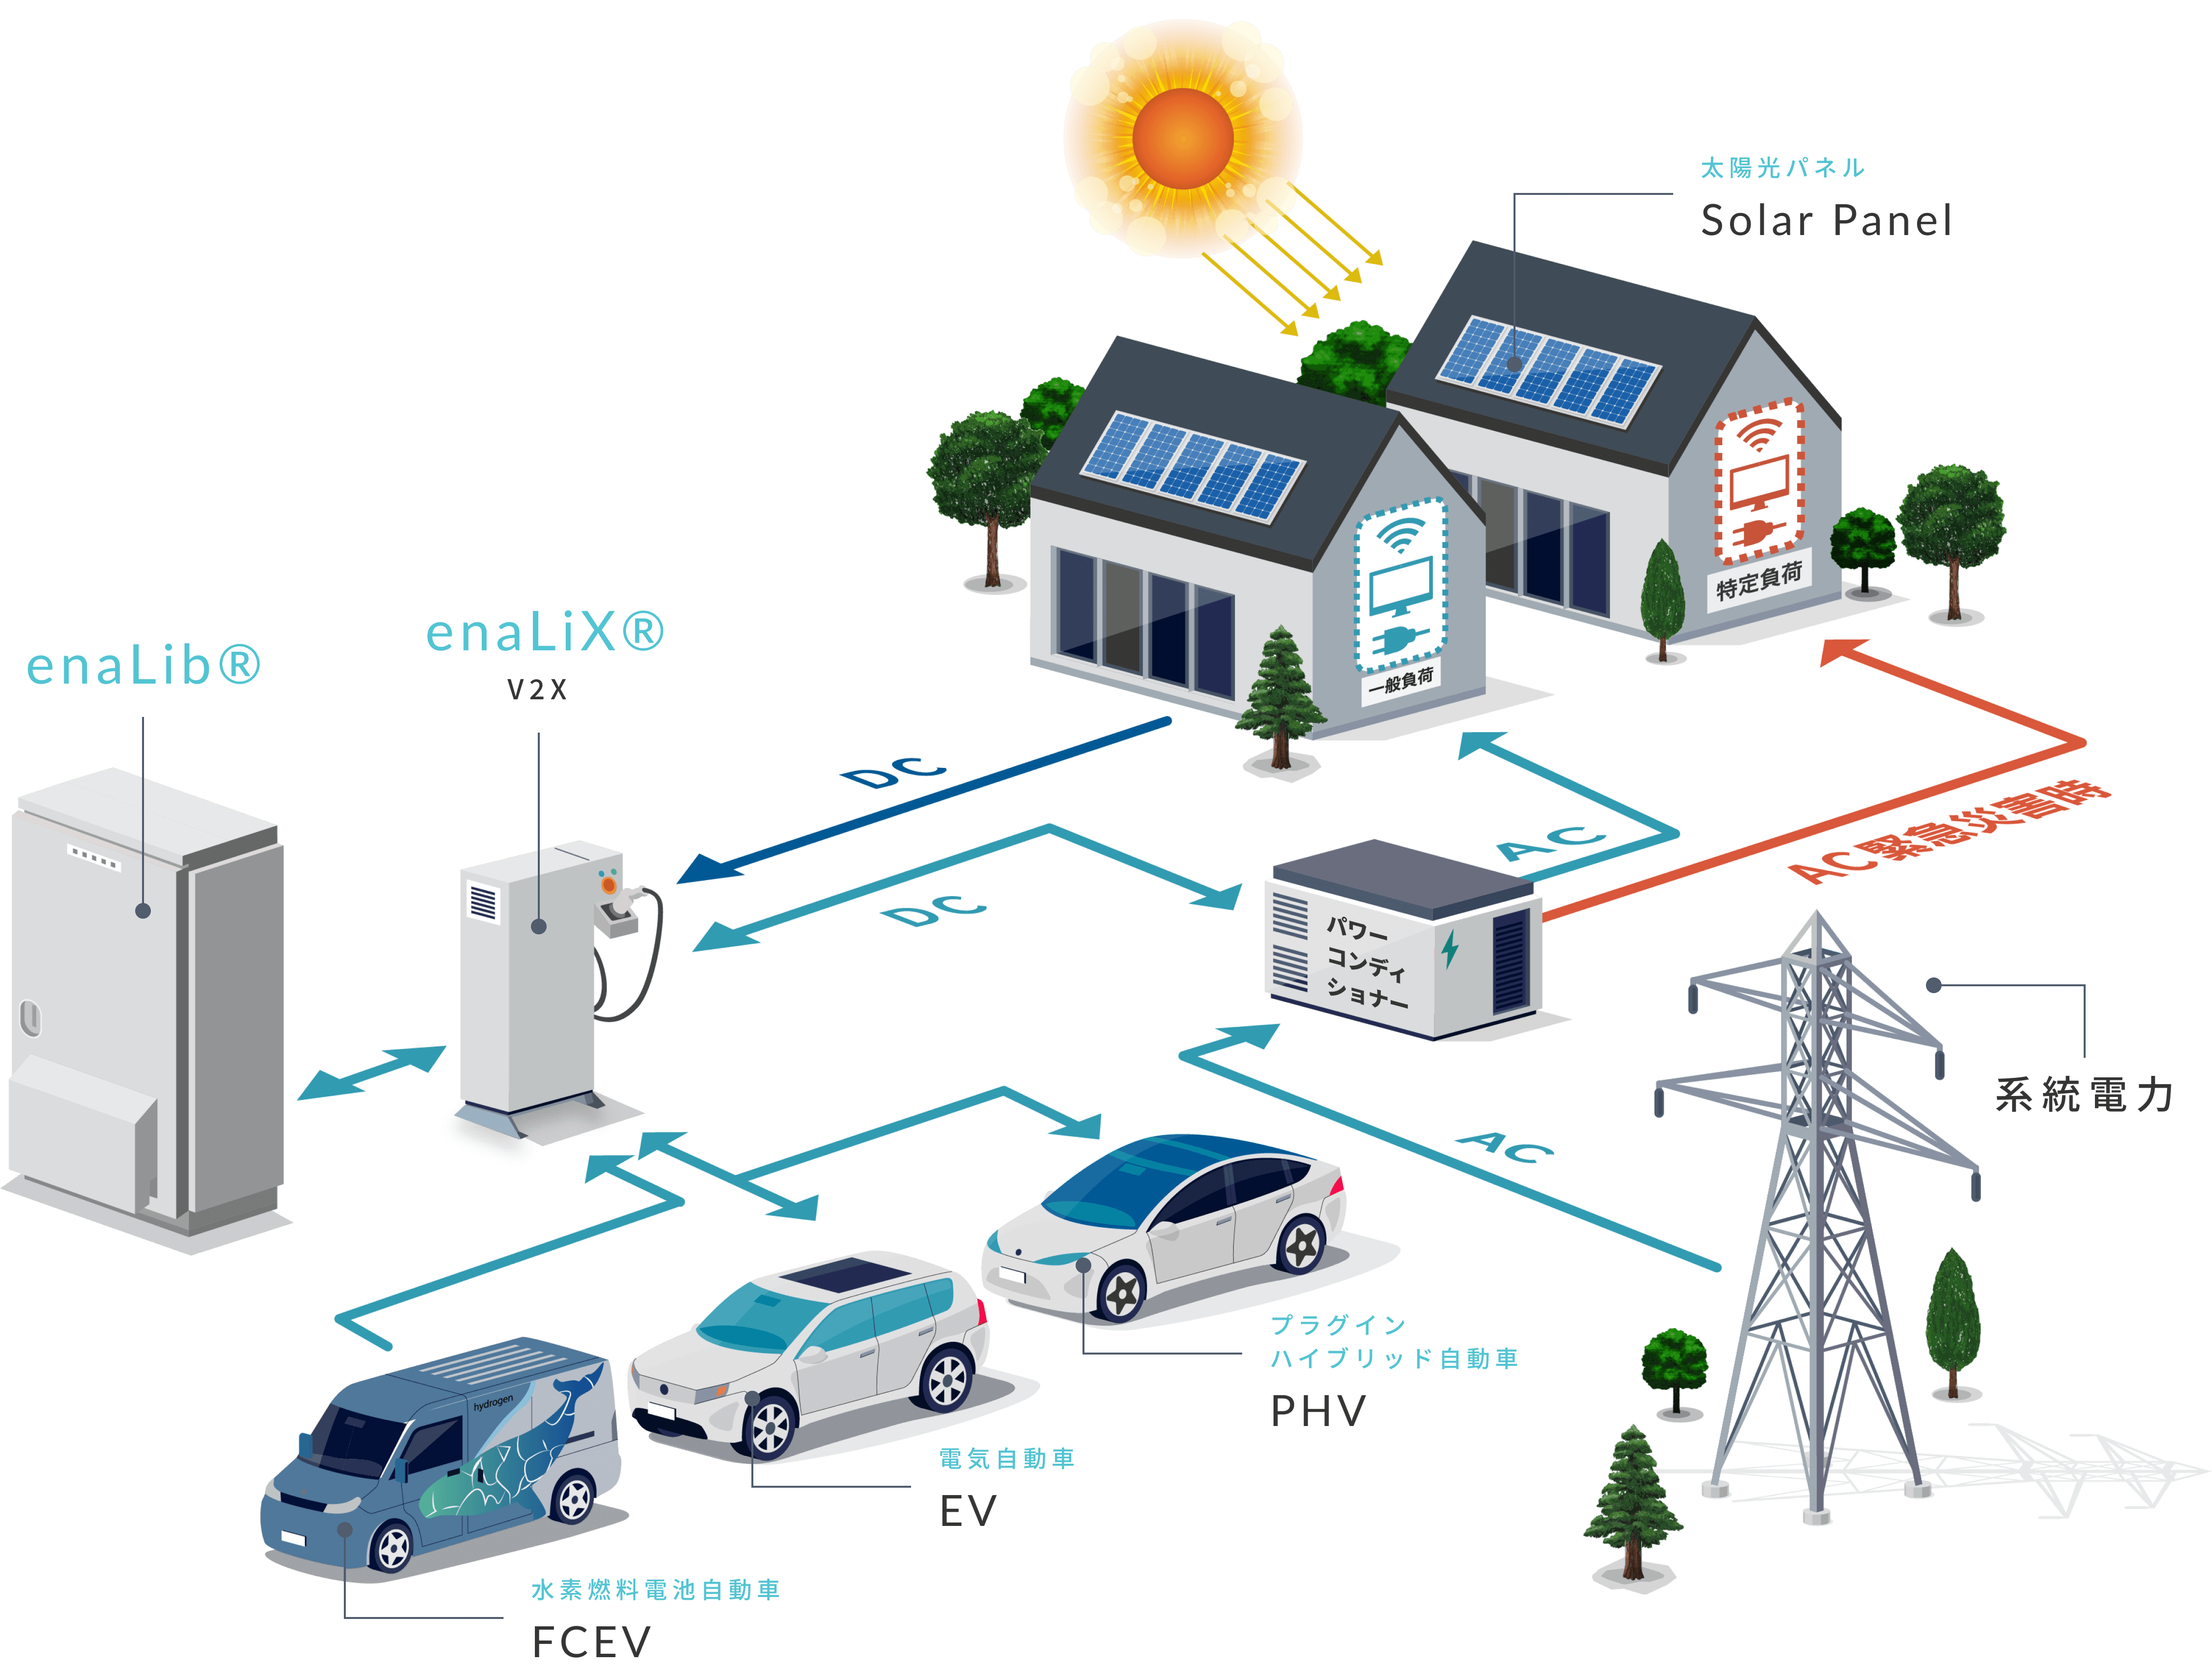 enaLibとenaLiXの連携による自立分散型電力供給システムの図解